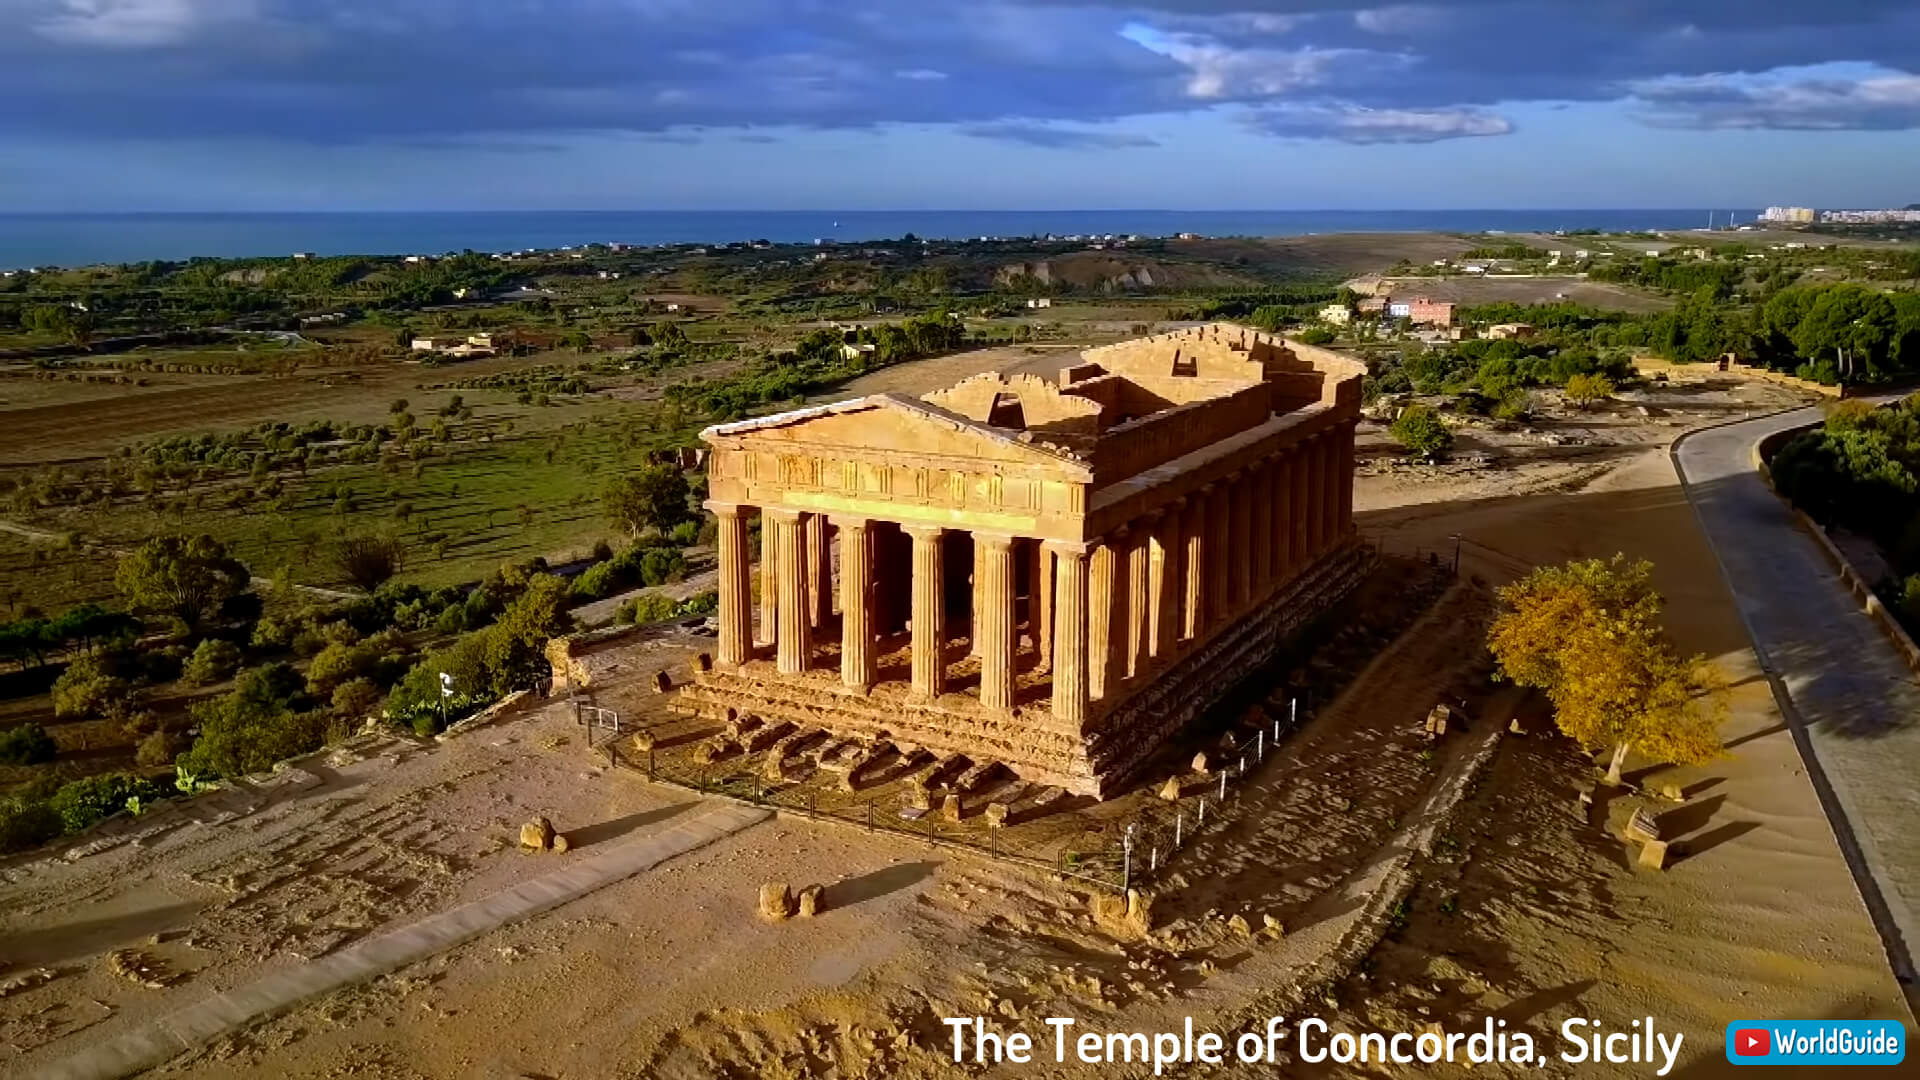 The Temple of Concordia, Sicily